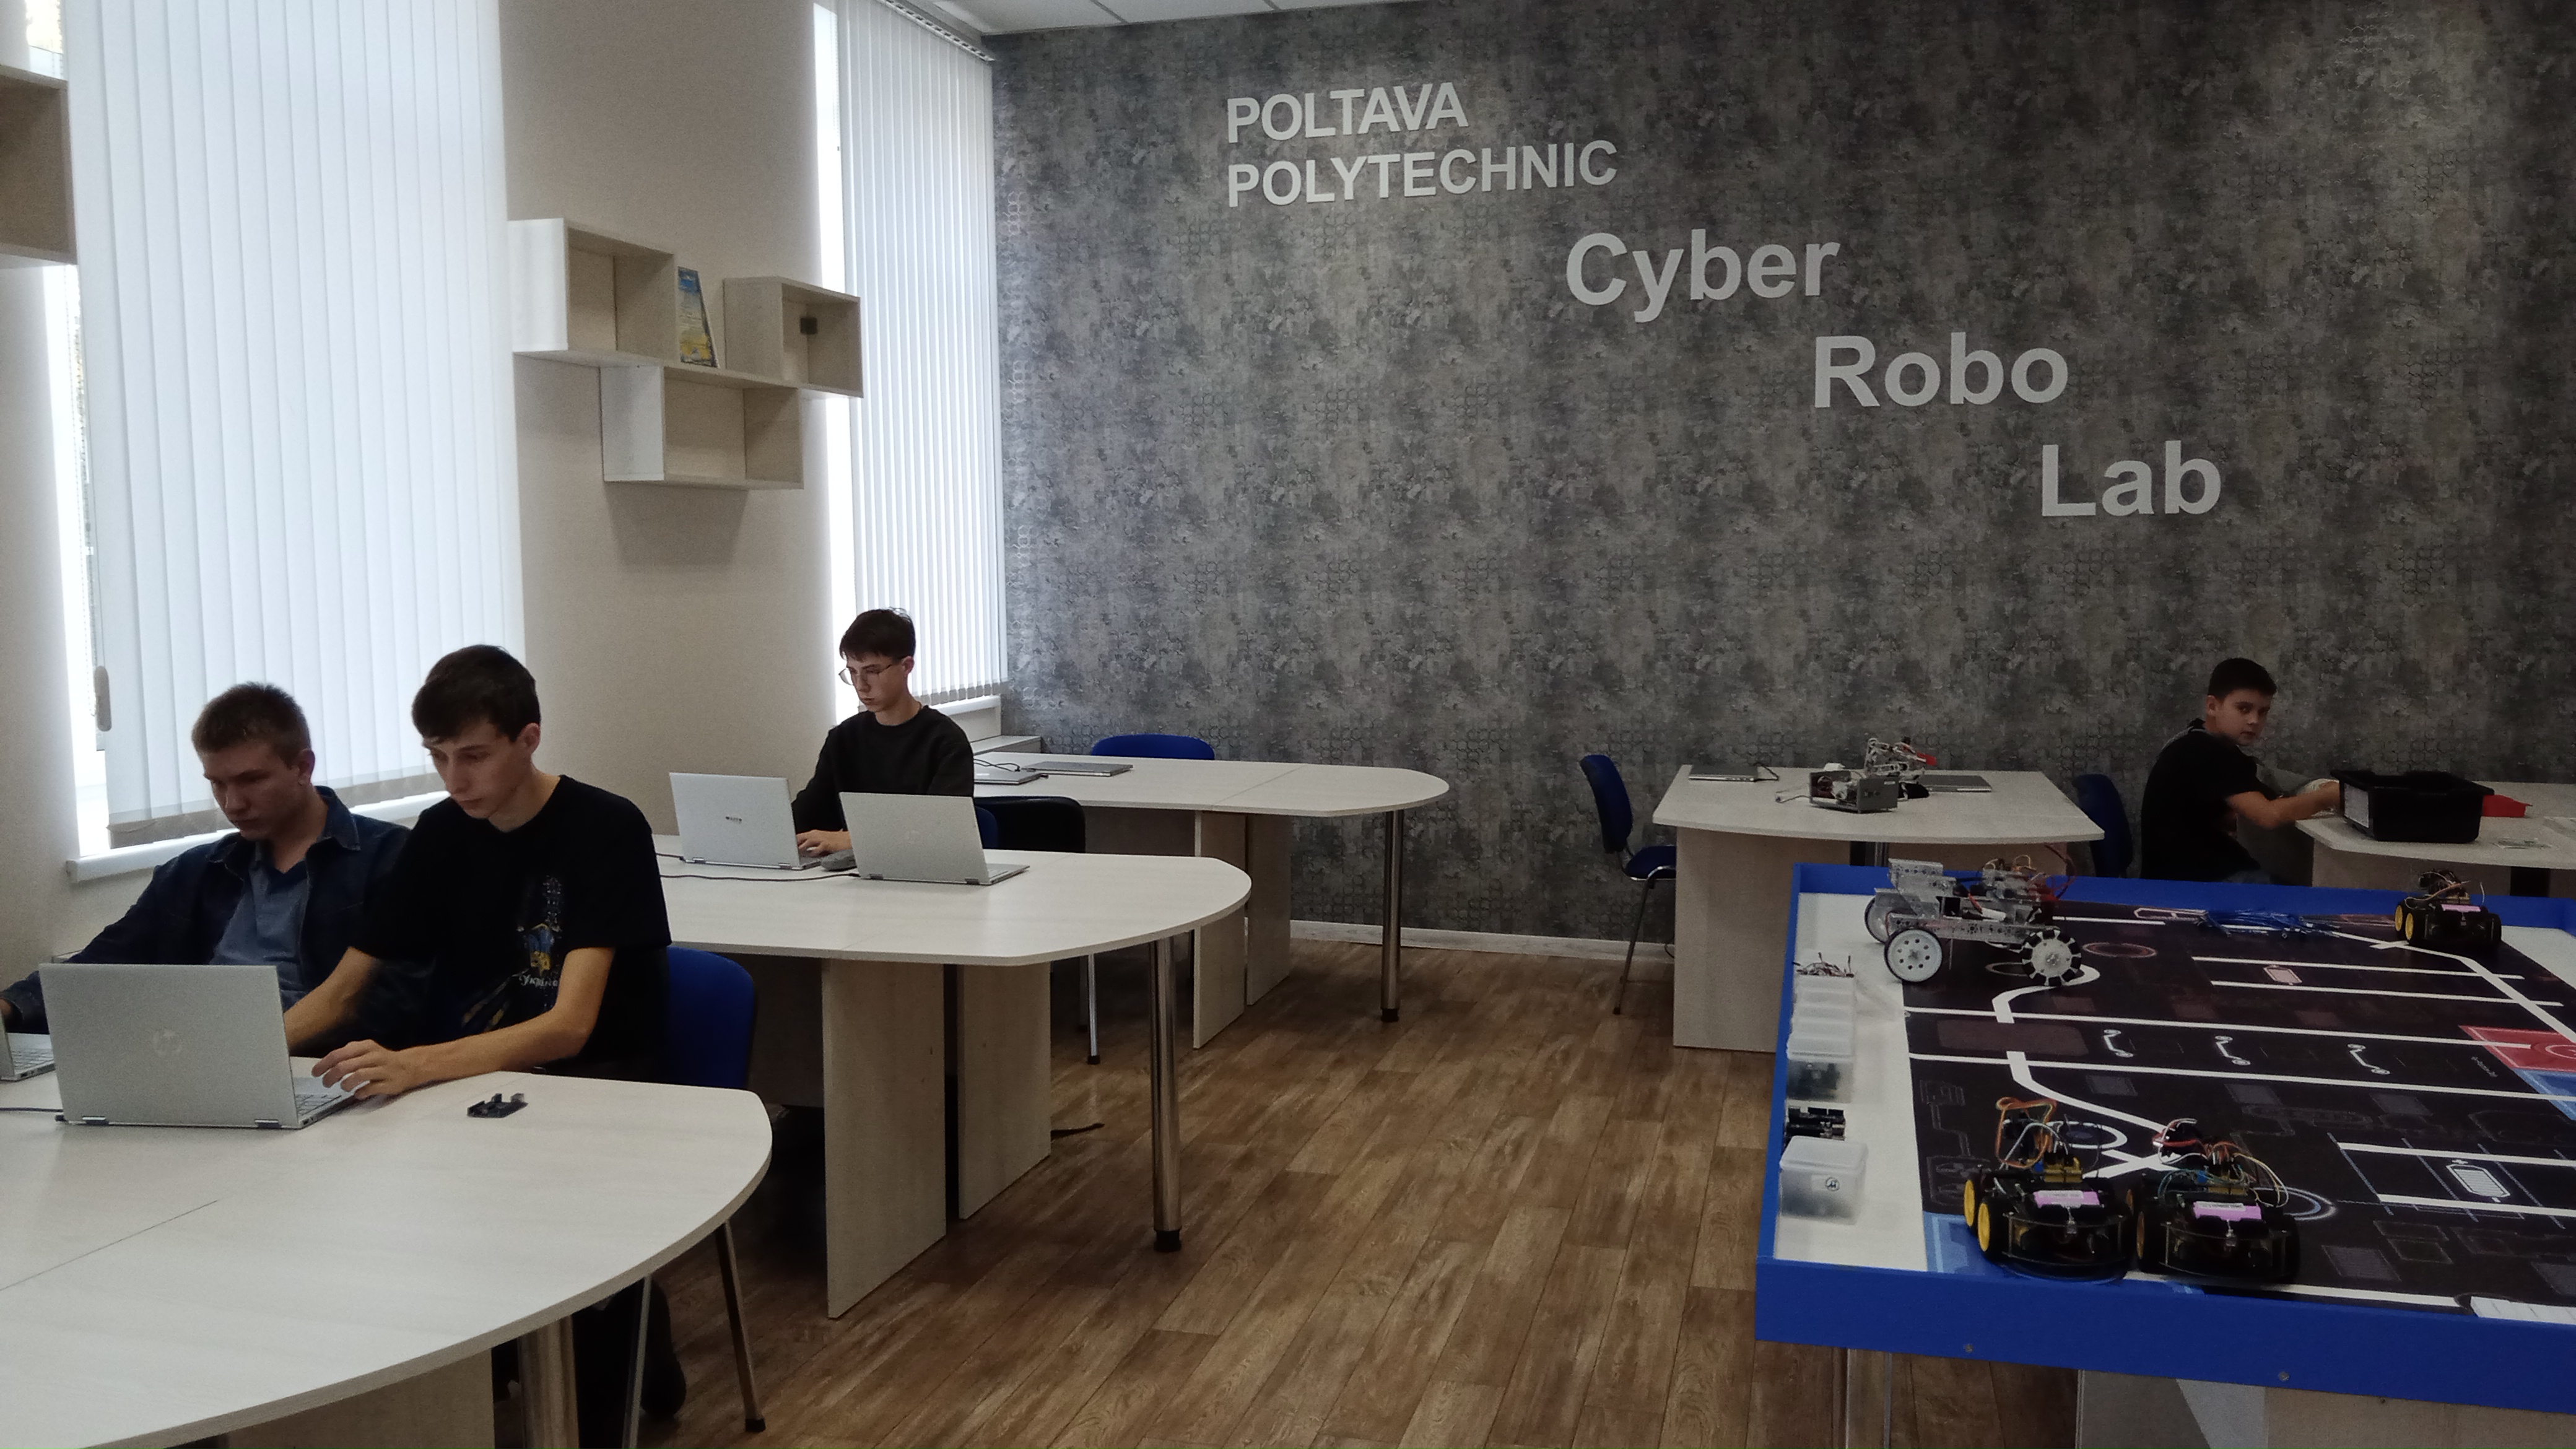 Гурток робототехніки Полтавської політехніки став майданчиком для реалізації найкреативніш...